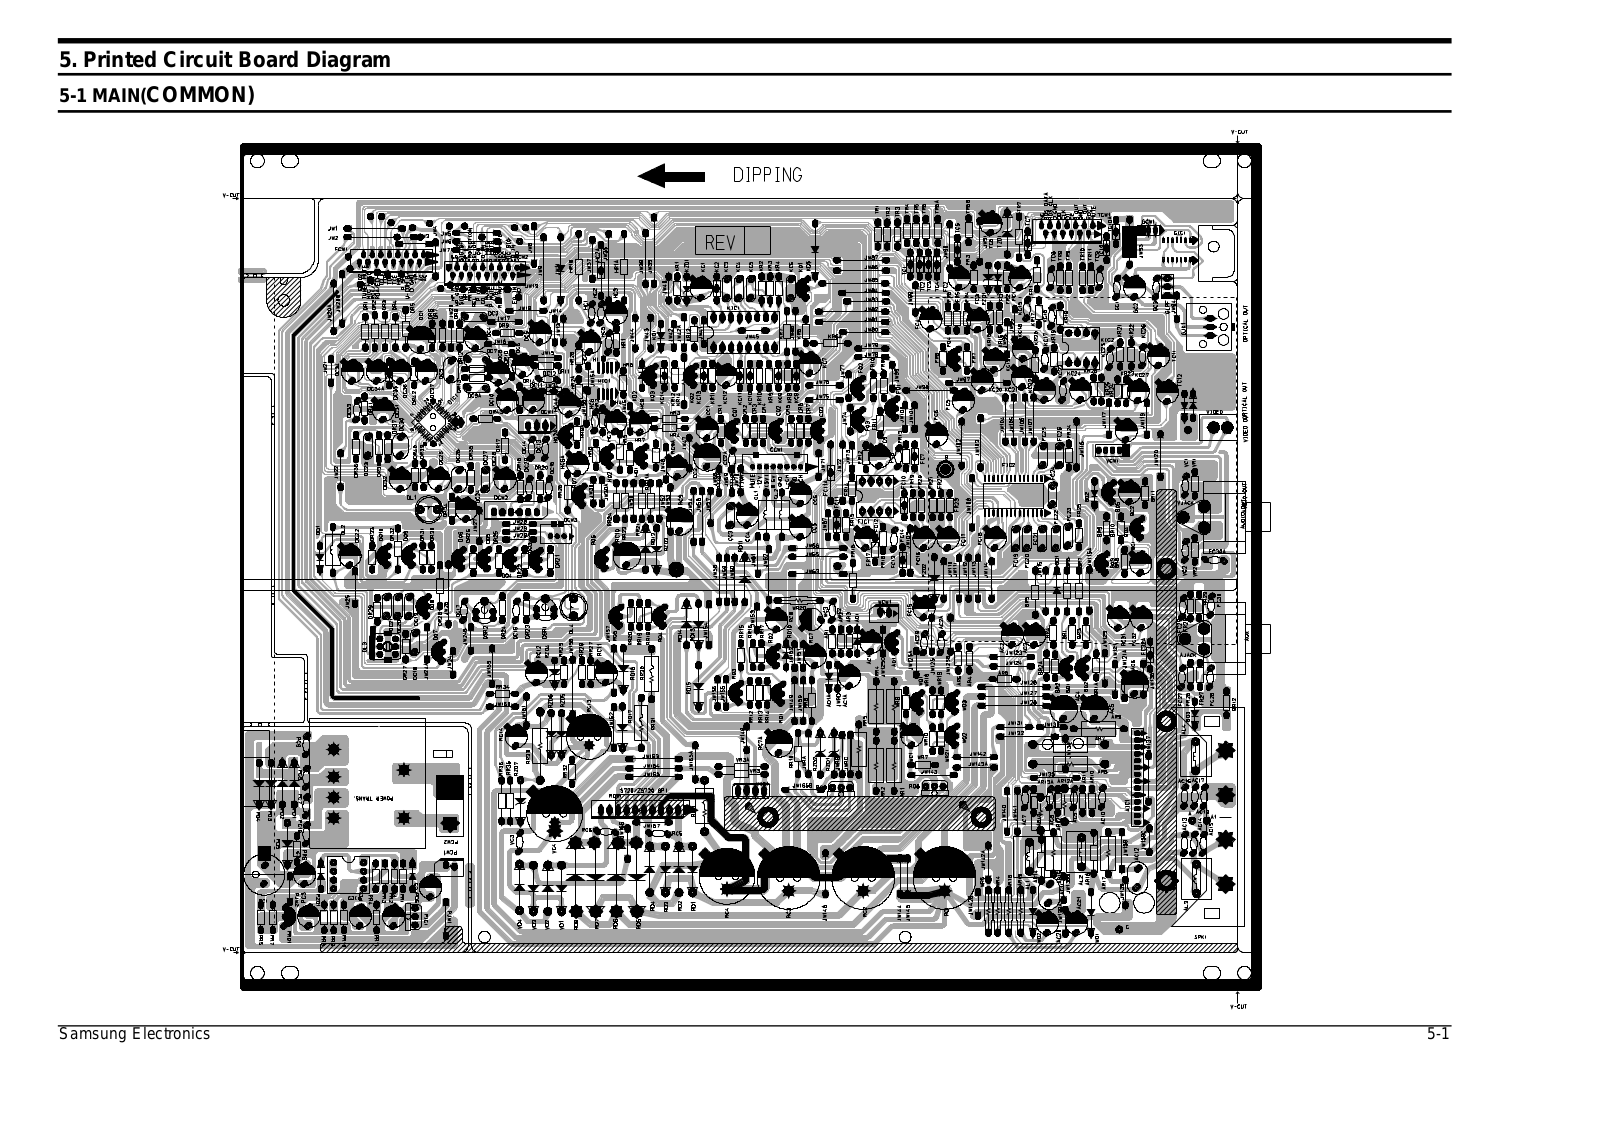 SAMSUNG MAX-ZS720, MAX-S720 Schematic PCB Diagram